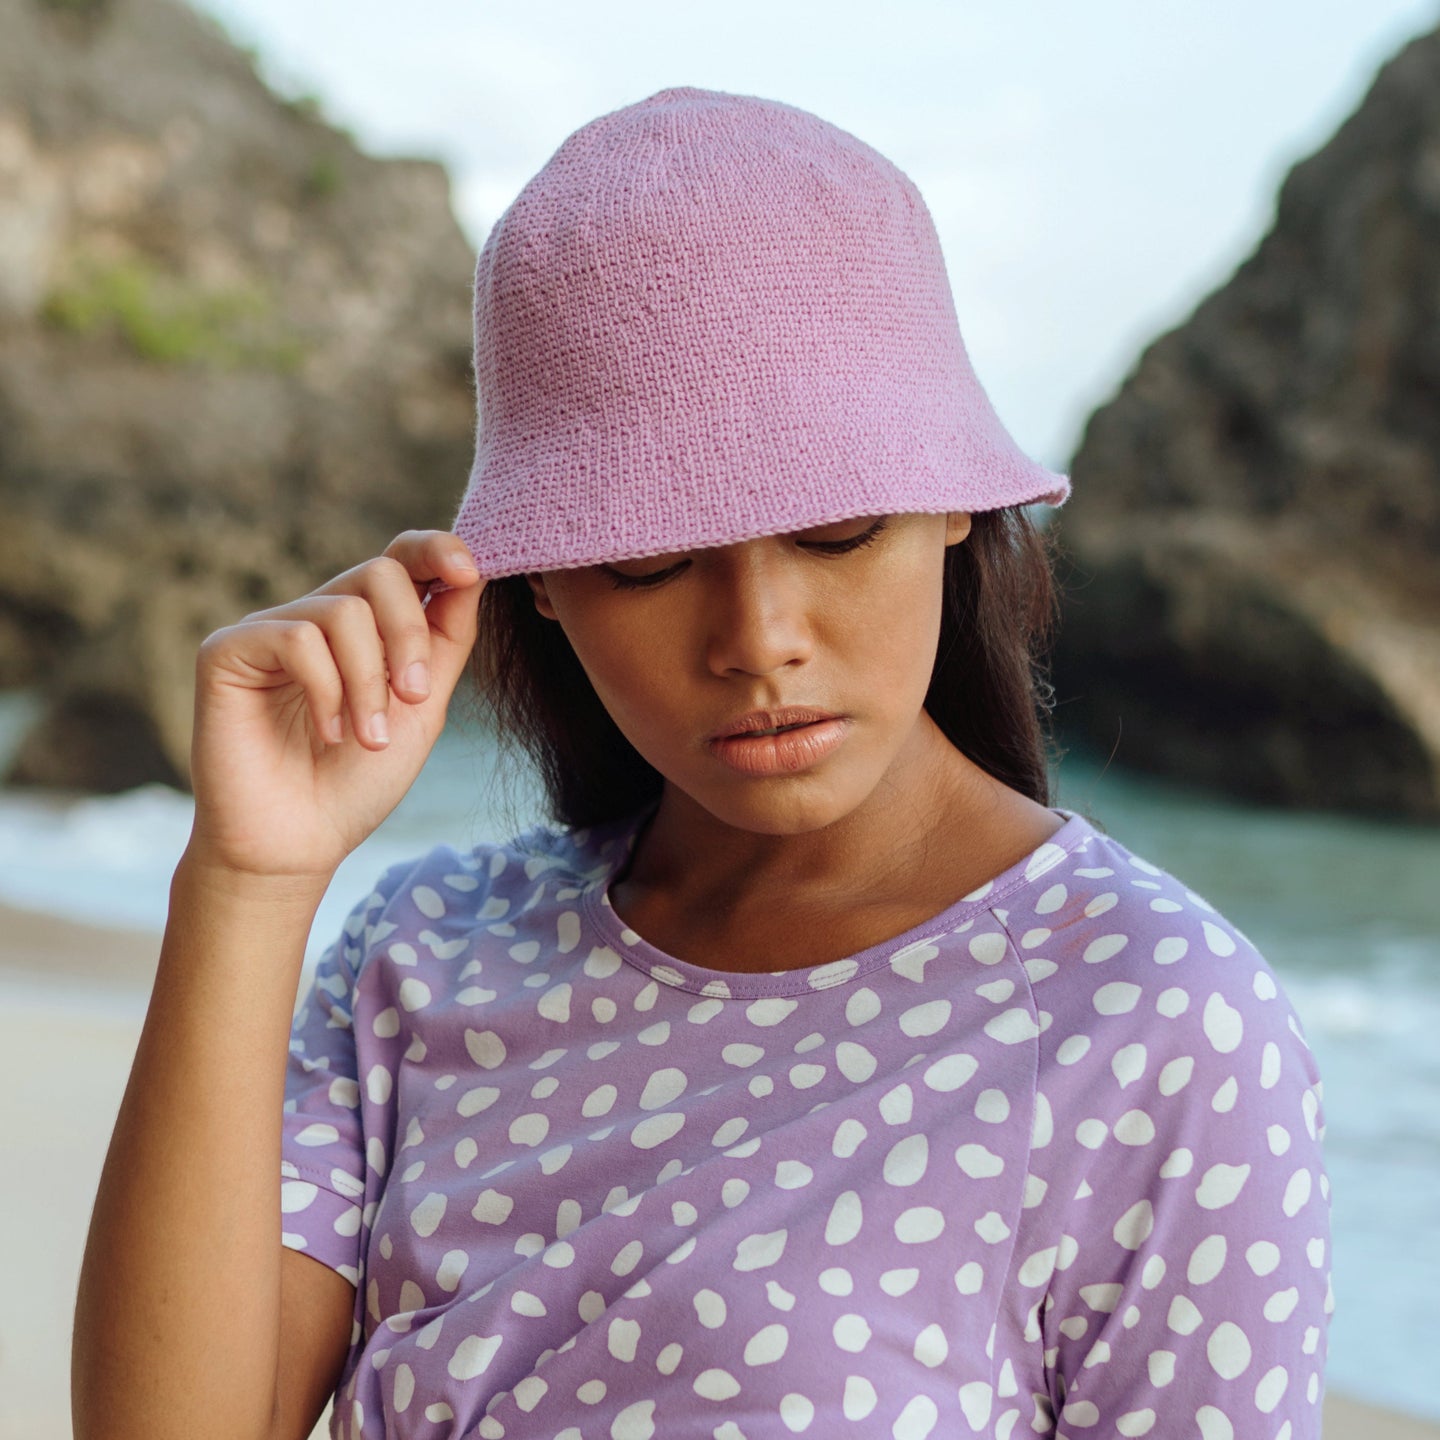 Buy FLORETTE Crochet Bucket Hat, in Lilac Purple by BrunnaCo